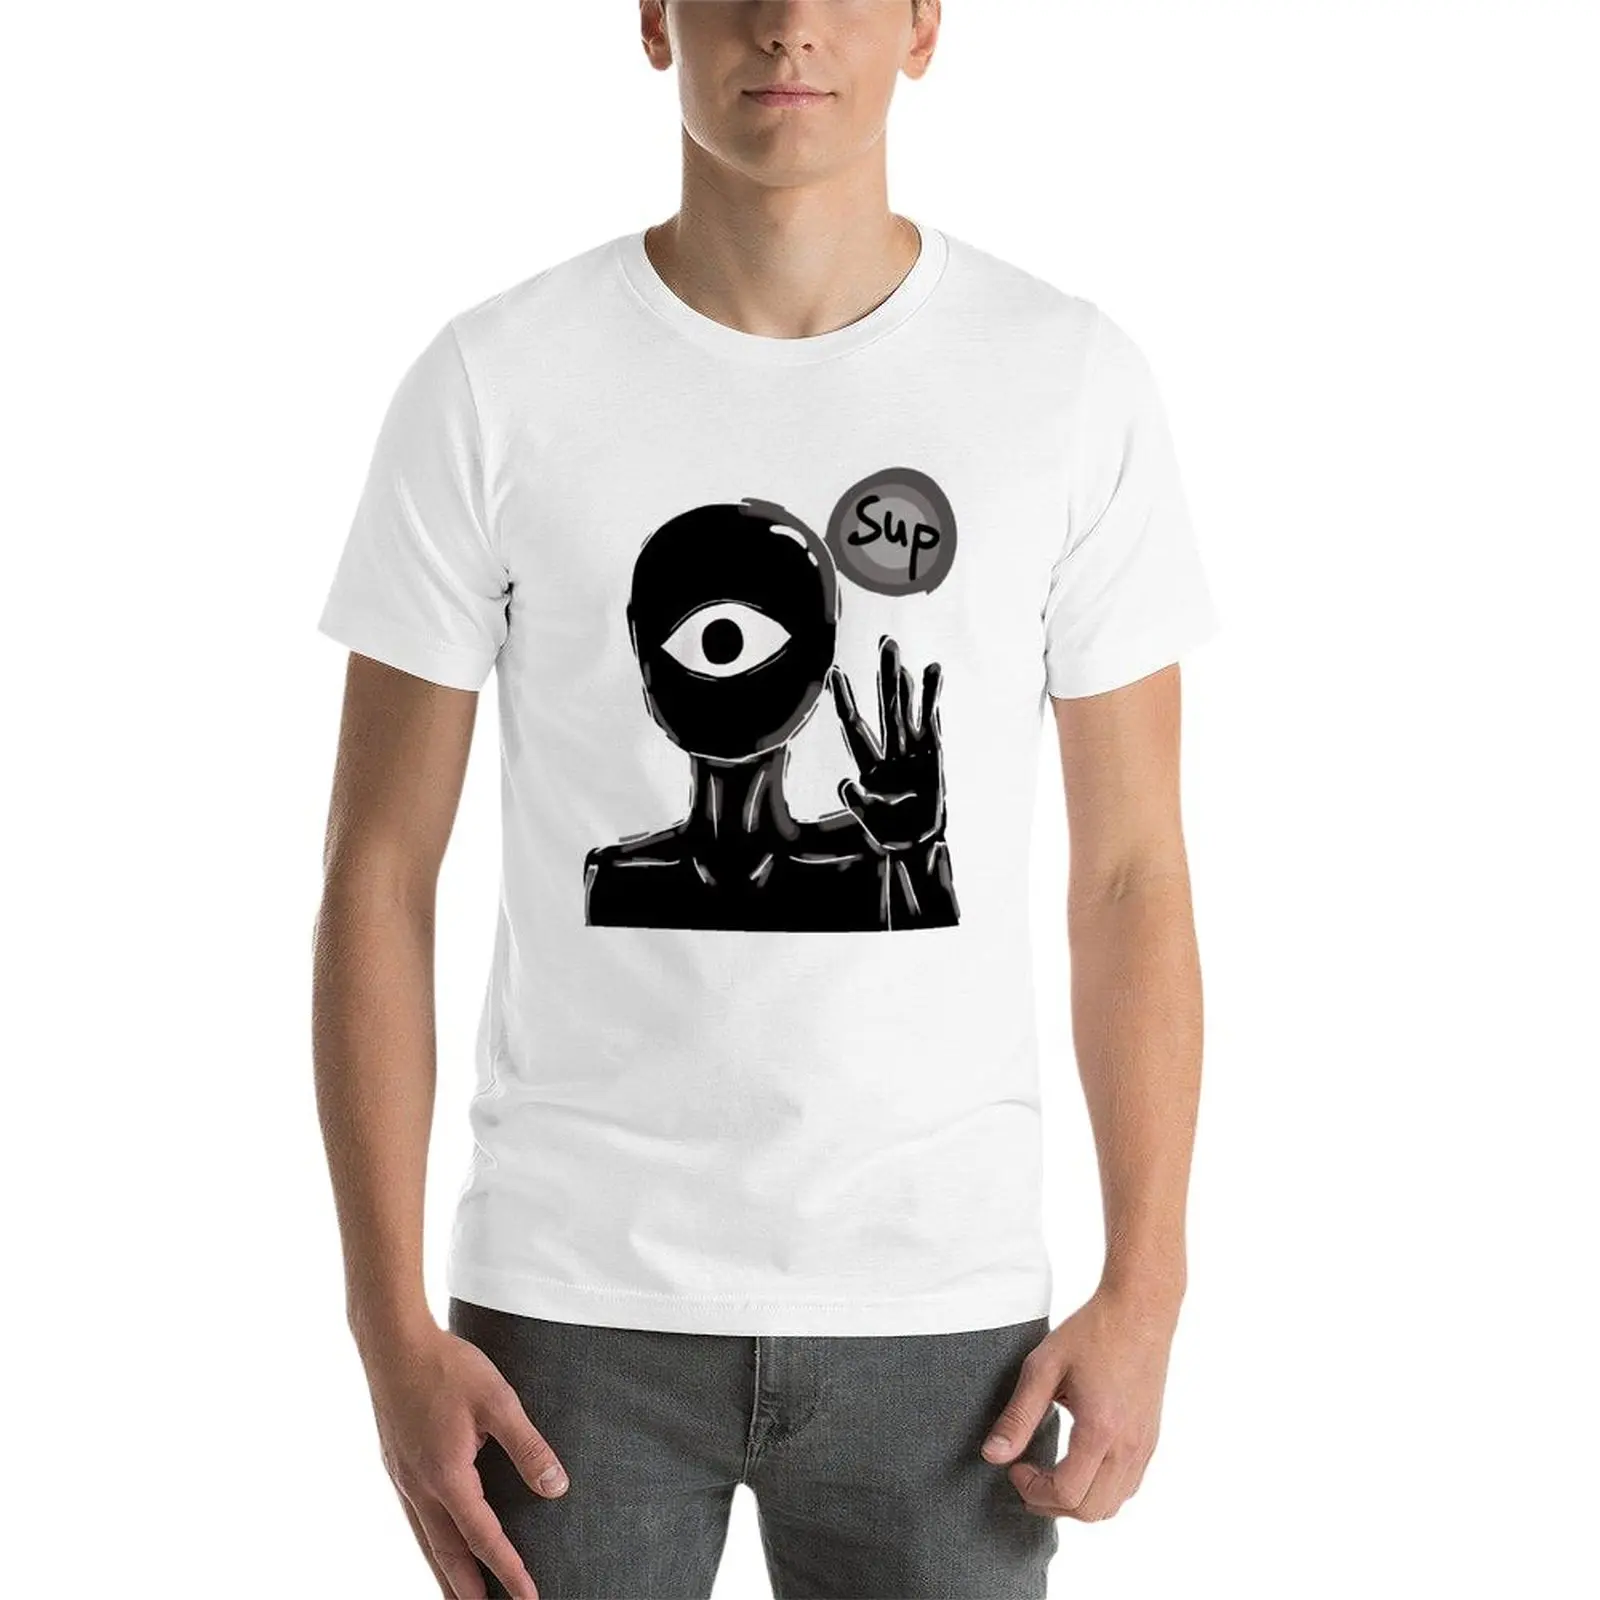 DOORS - Seek wsup hide and Seek horror Kids T-Shirt for Sale by